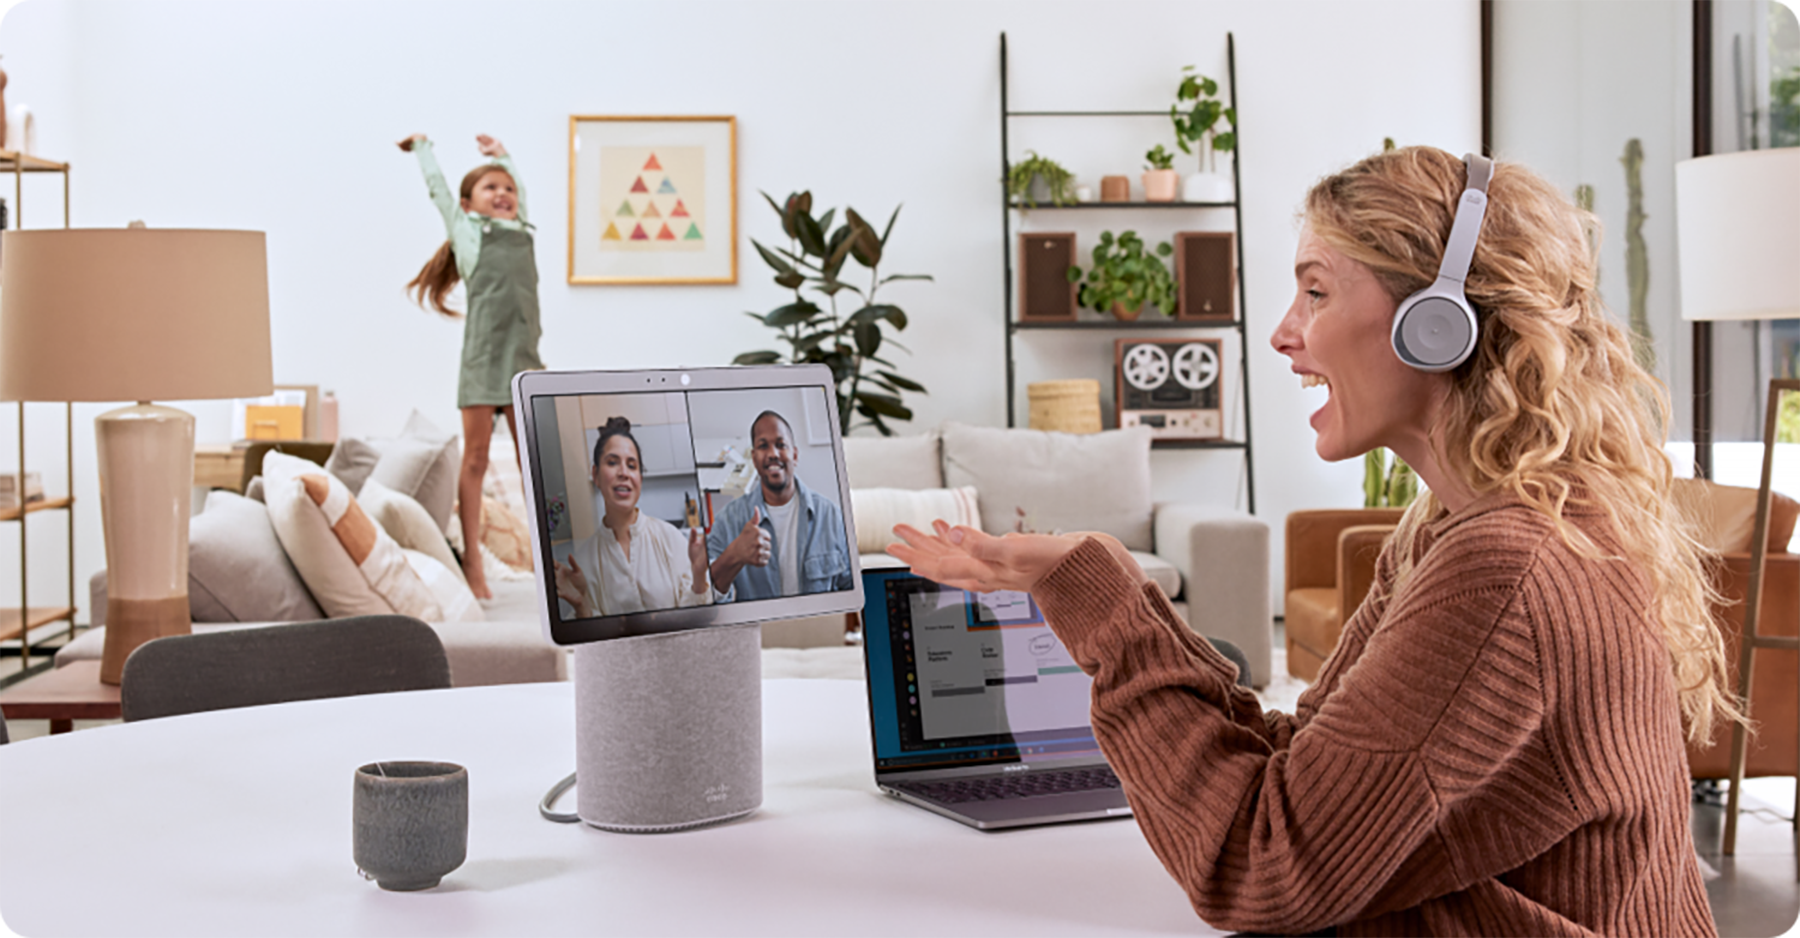 Cisco Desk Mini is a portable all-in-one collaboration device